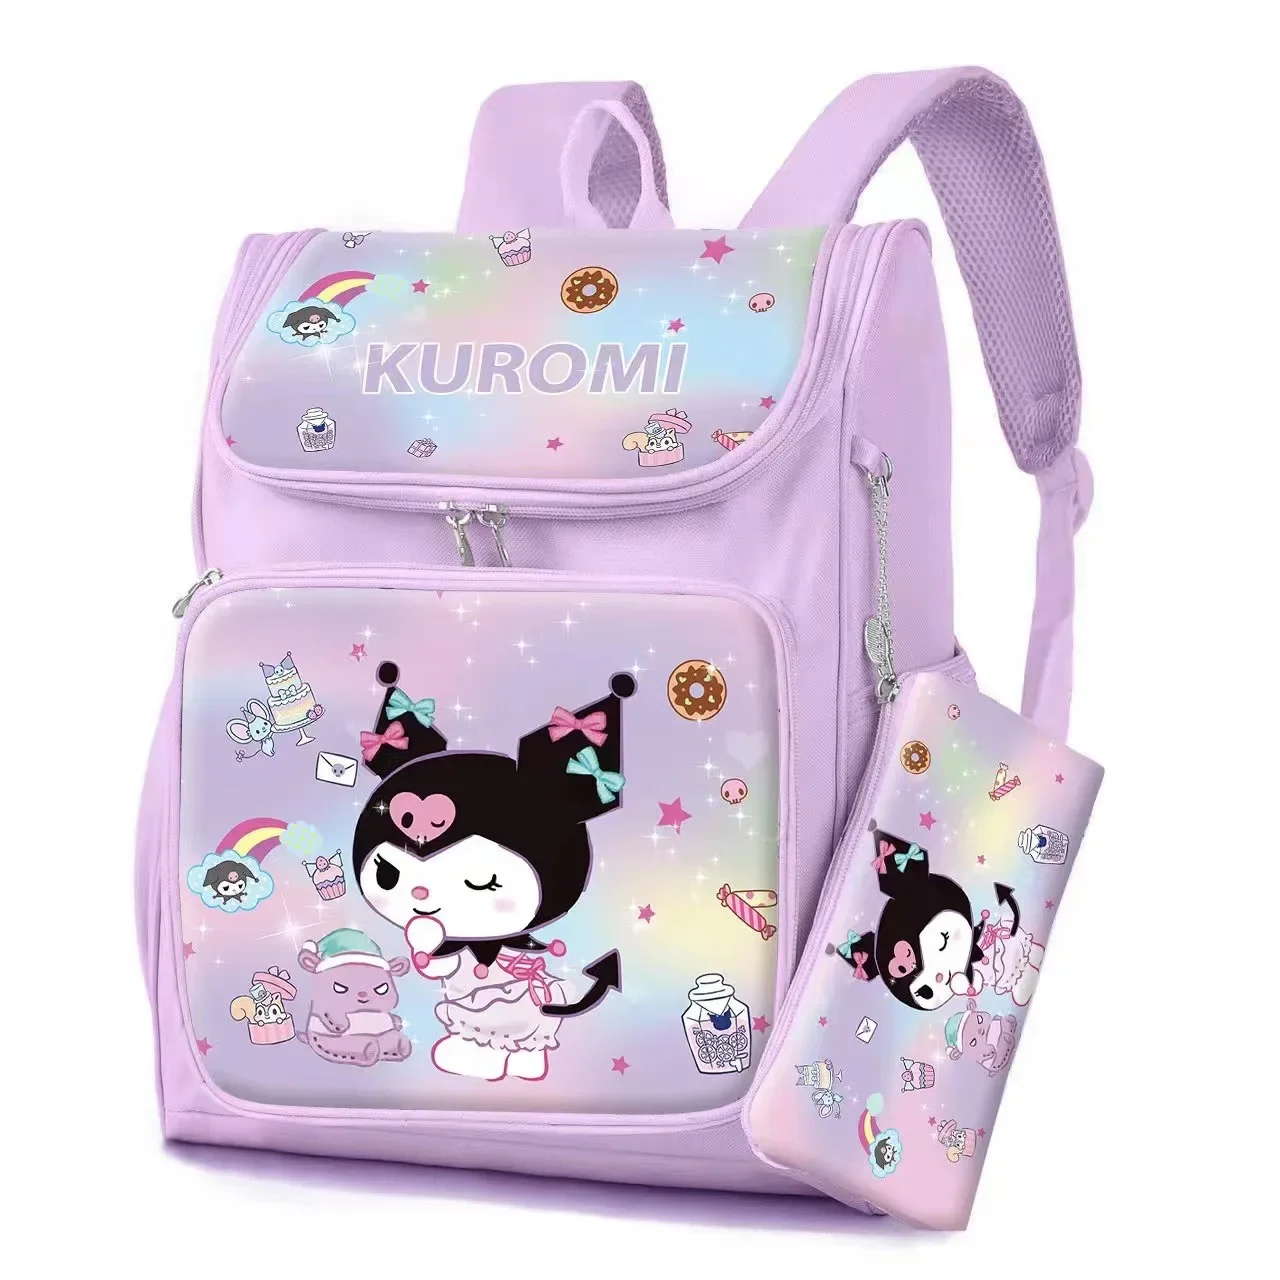 MINISO Kawaii Hello Kitty Sanrio Kuromi Waterproof backpack School Bag Pencil bag Anime cosplay Stationery bag for kids girl